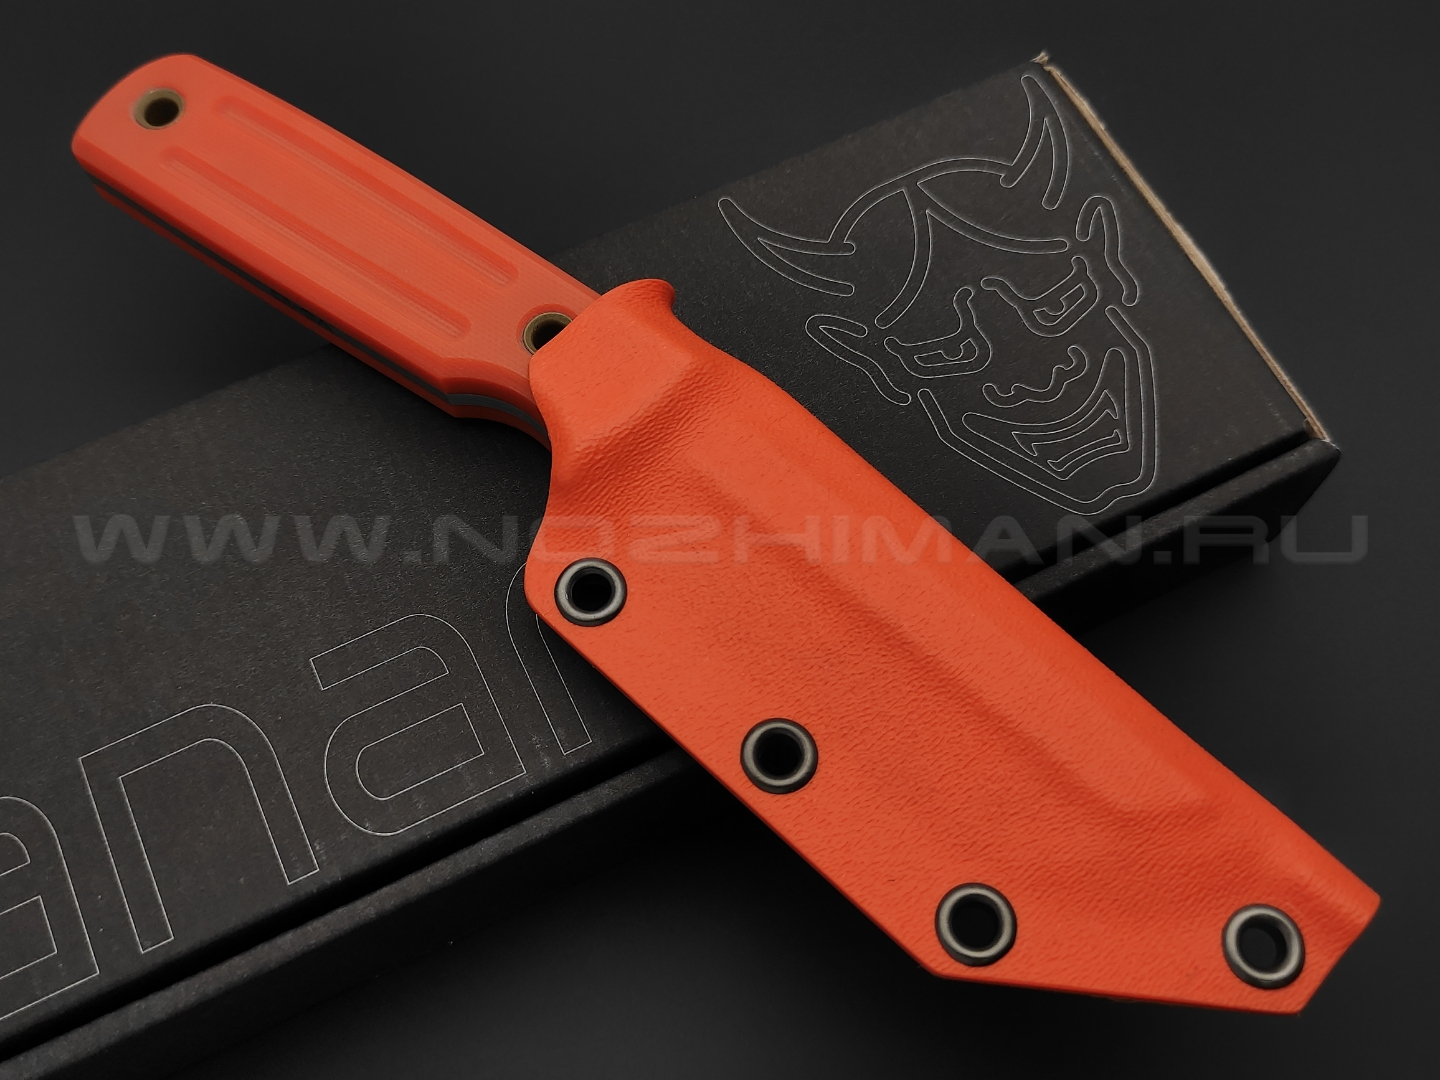 Нож Yanari средний сталь VG-10, рукоять G10 orange, ножны kydex orange